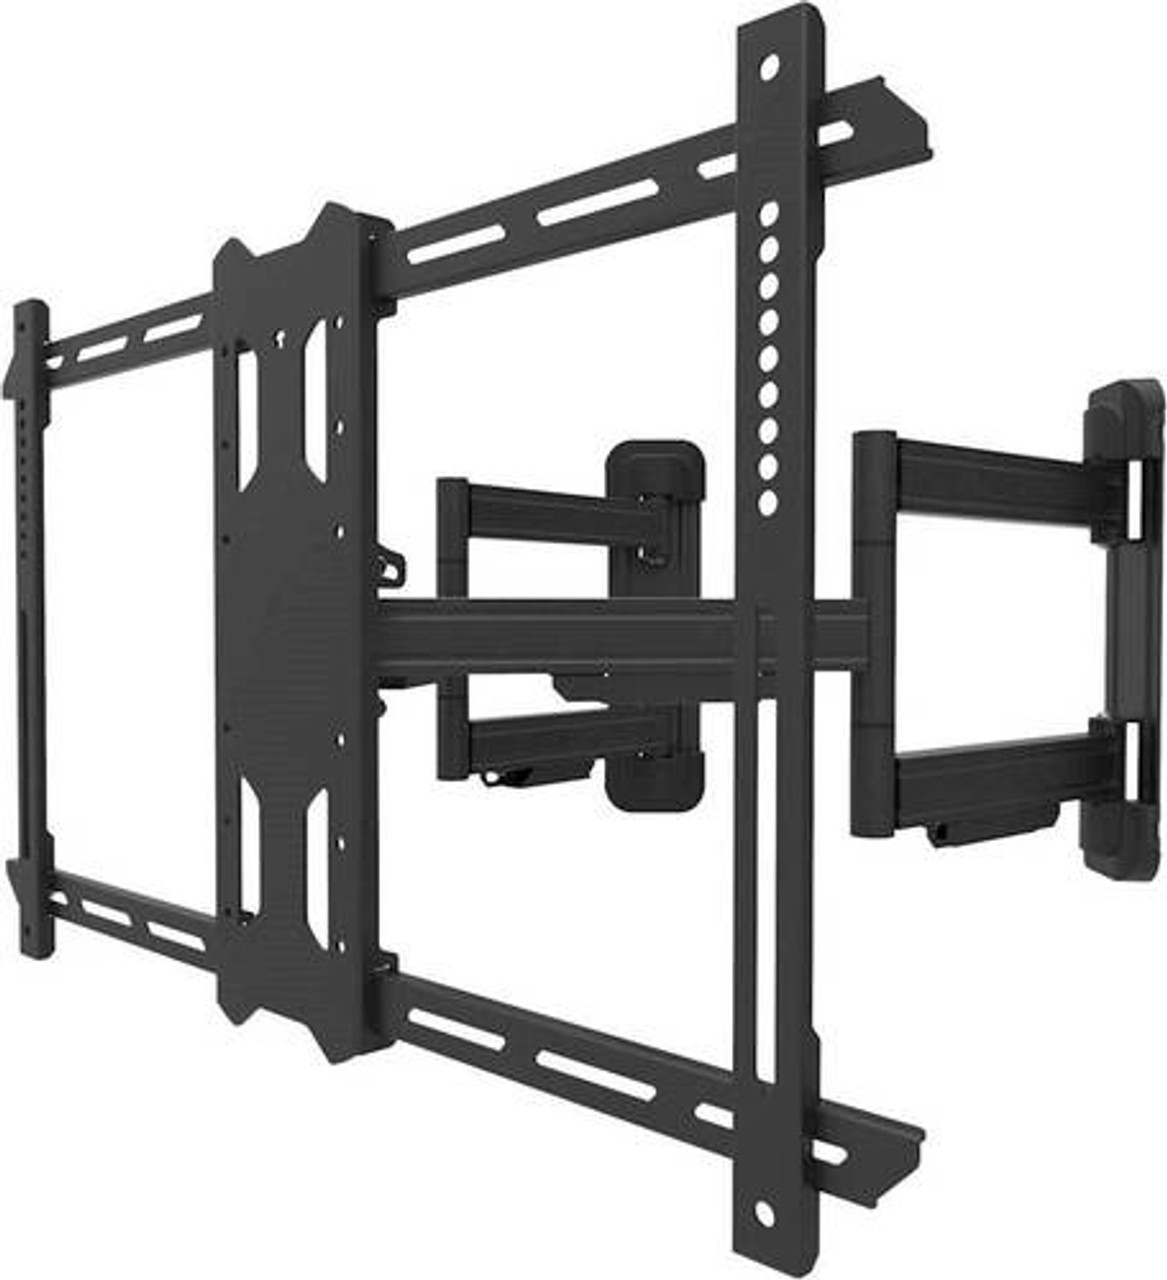 Kanto - Full-Motion Corner TV Wall Mount for Most 37" - 70" TVs - Black